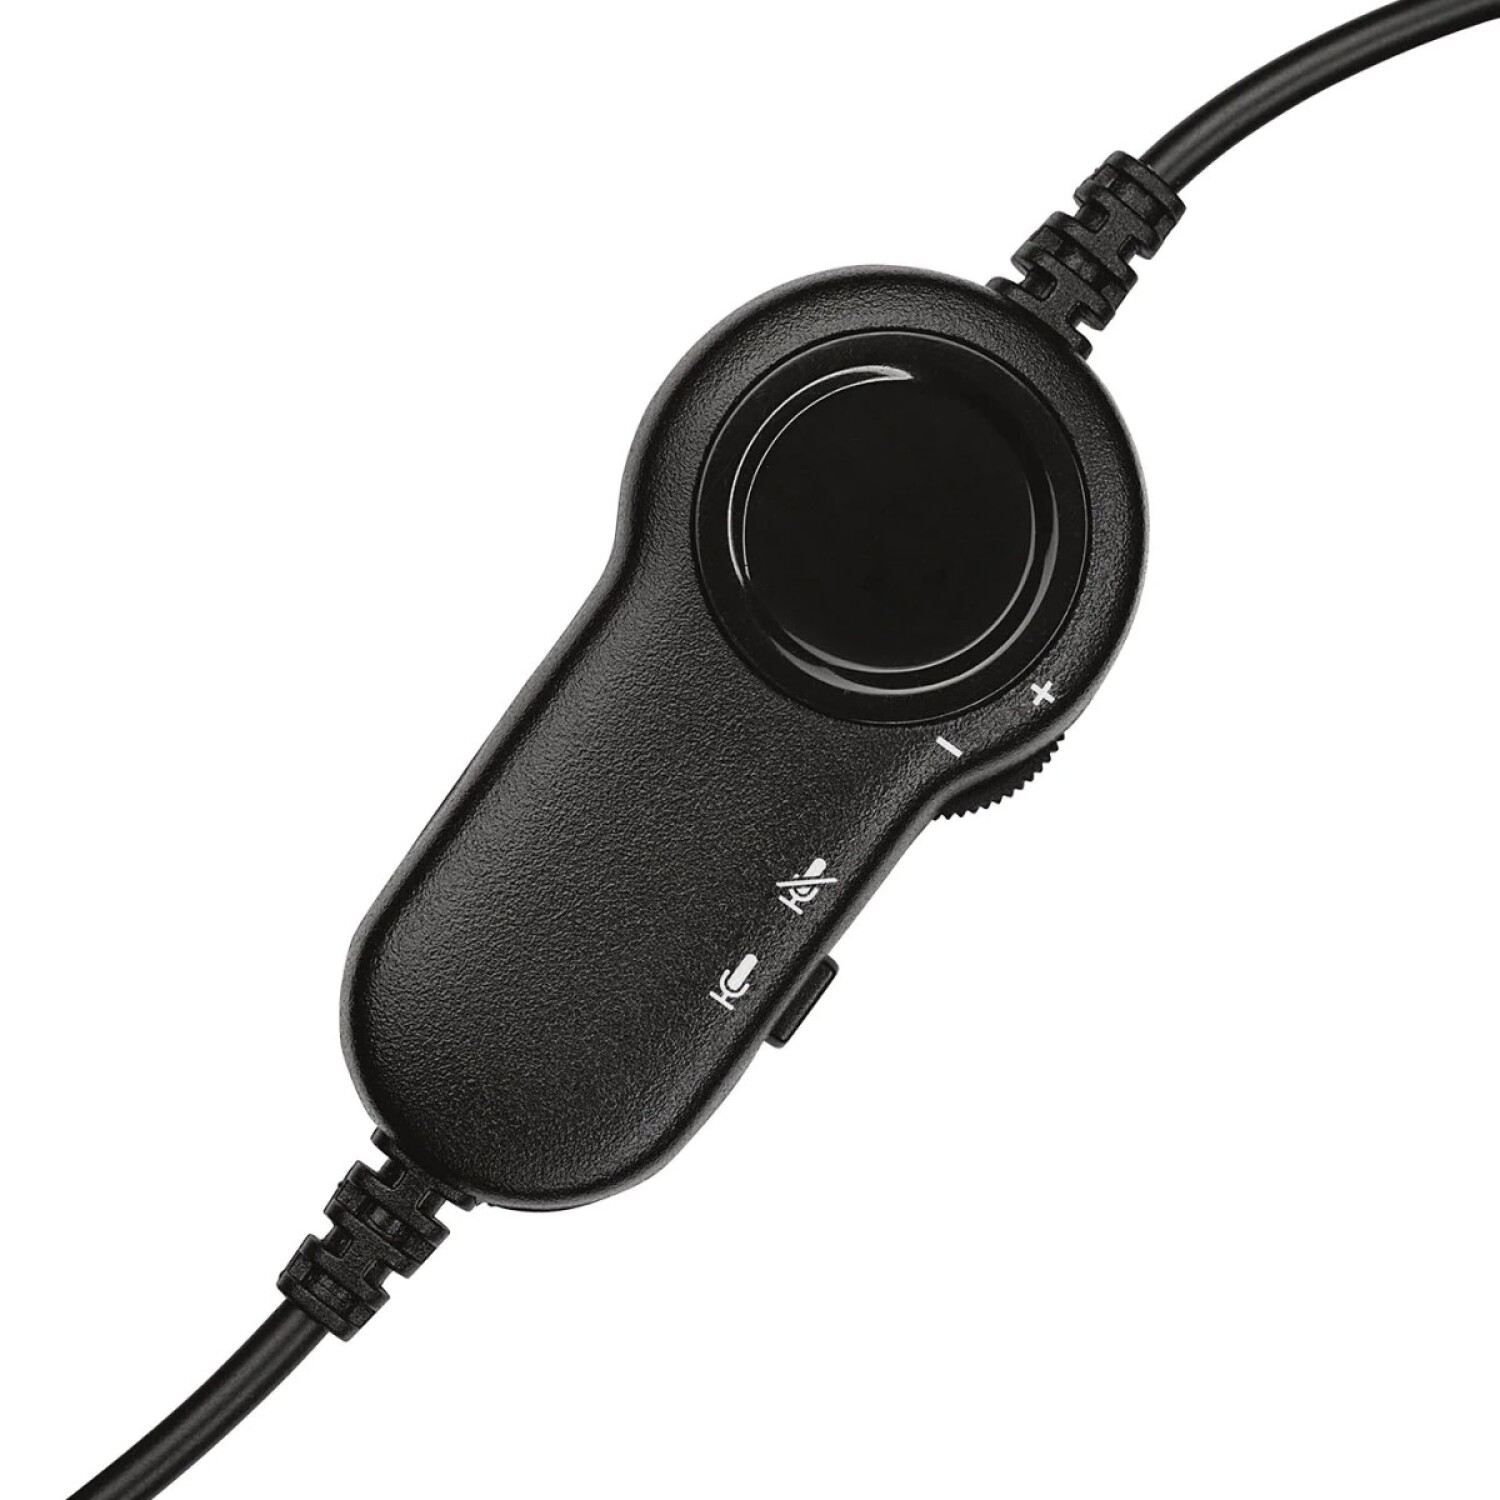 Cascos reducción de ruido gaming con cable micrófono Logitech G335 - Negro